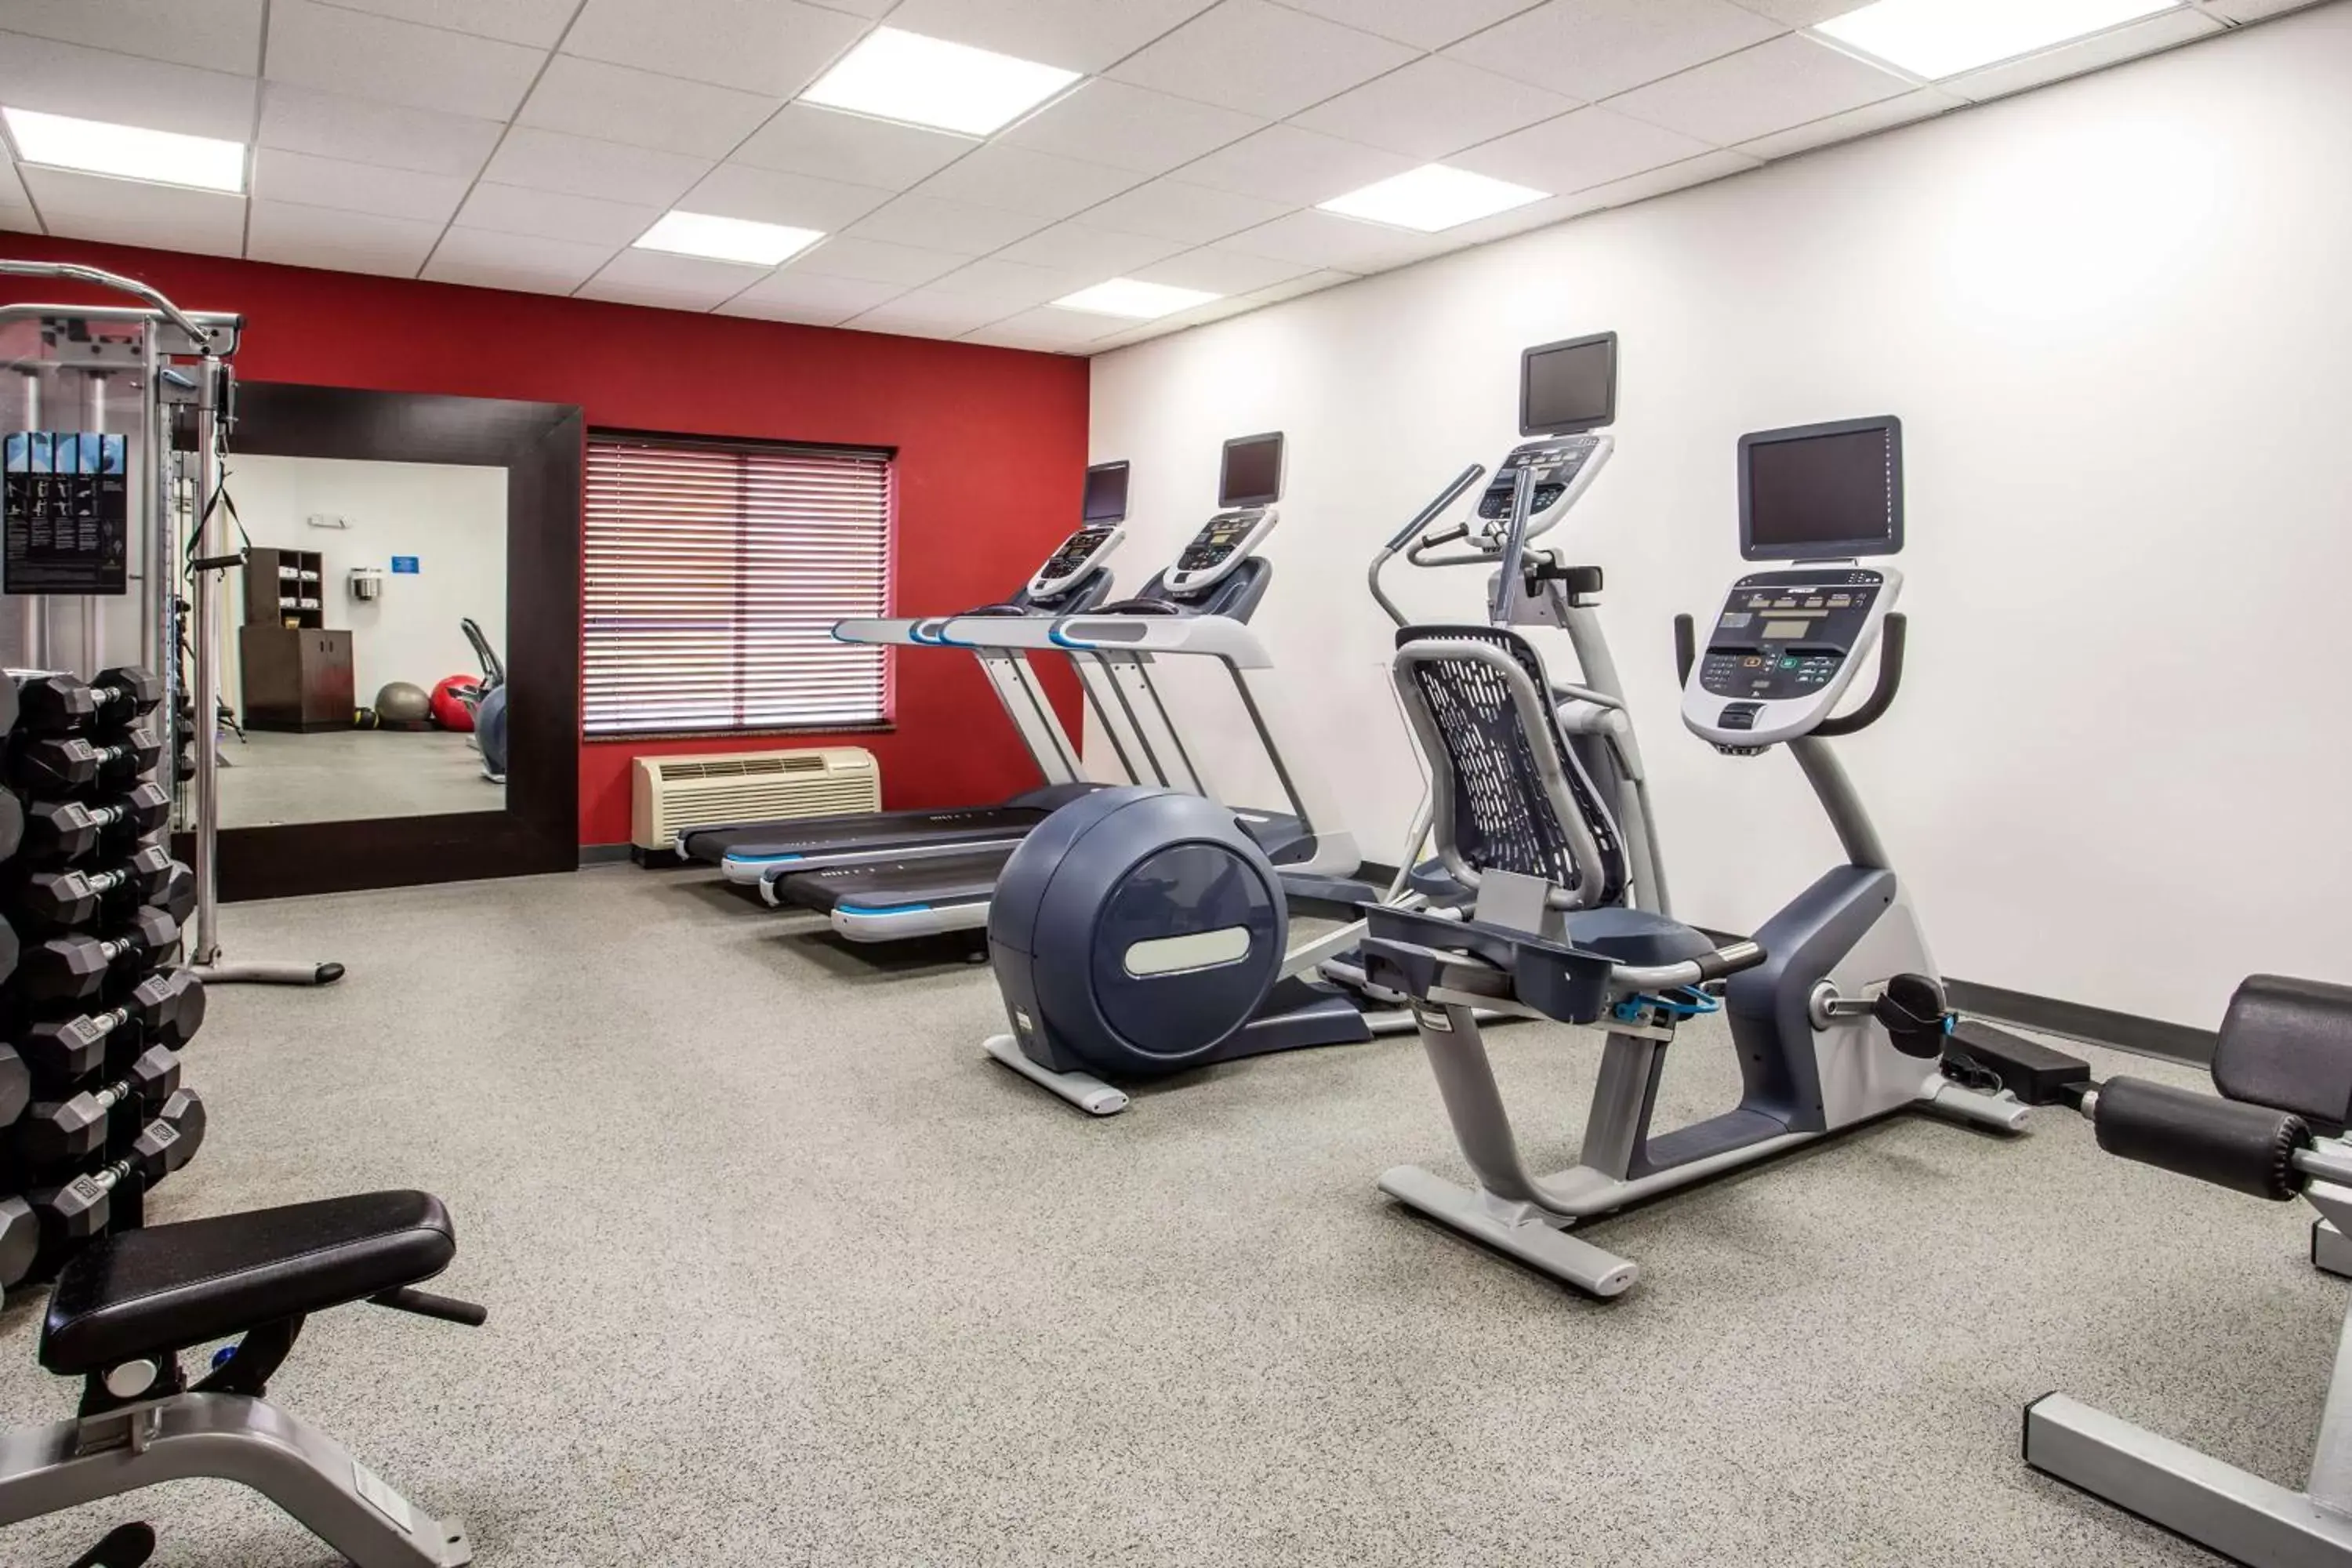 Fitness centre/facilities, Fitness Center/Facilities in Hilton Garden Inn Nashville Smyrna